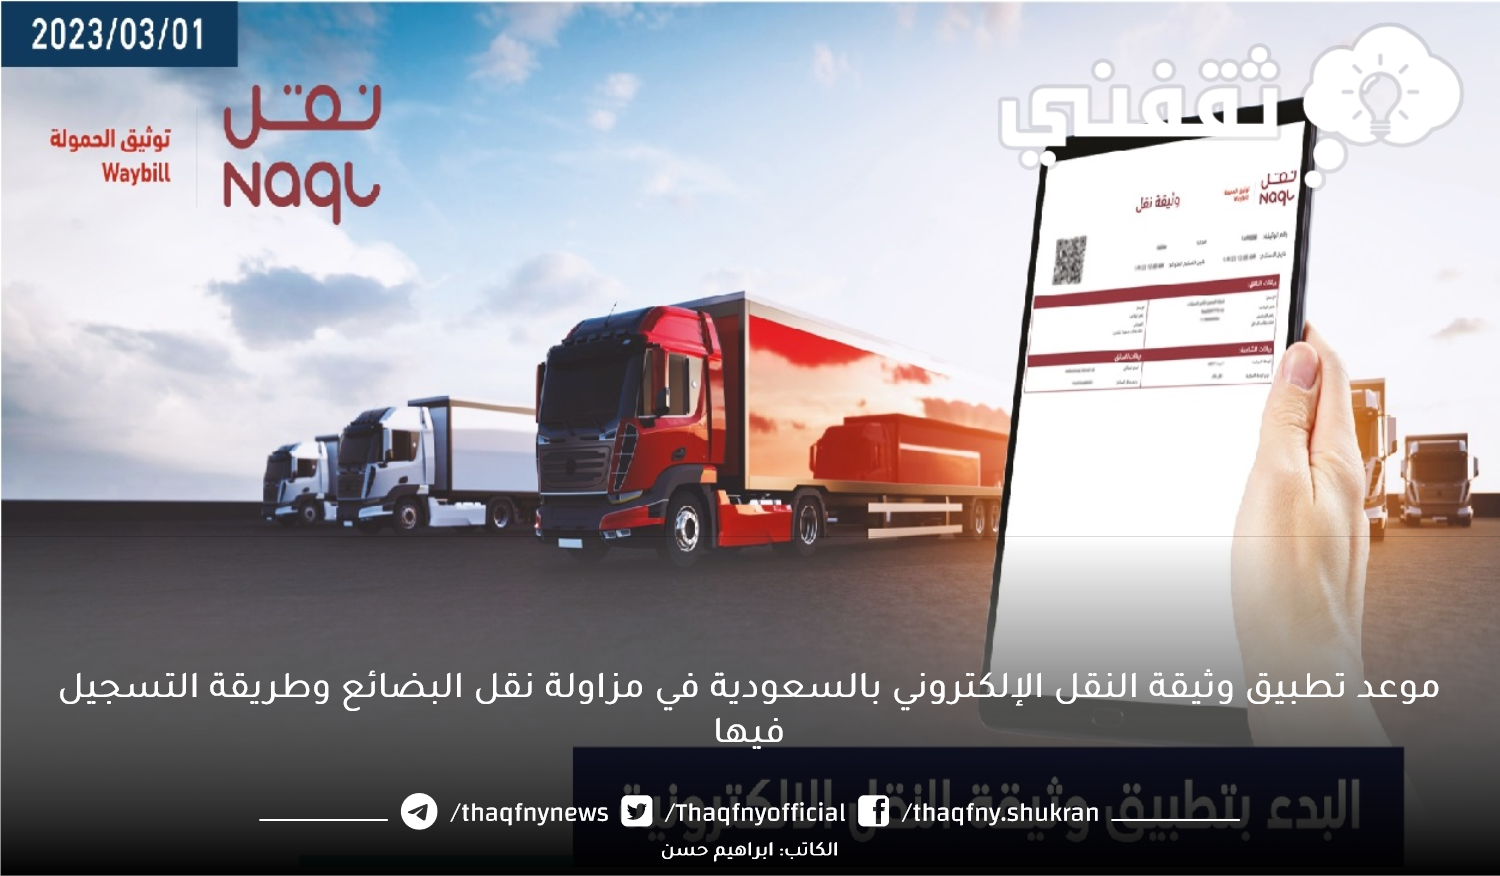 موعد تطبيق وثيقة النقل الإلكتروني بالسعودية في مزاولة نقل البضائع وطريقة التسجيل فيها